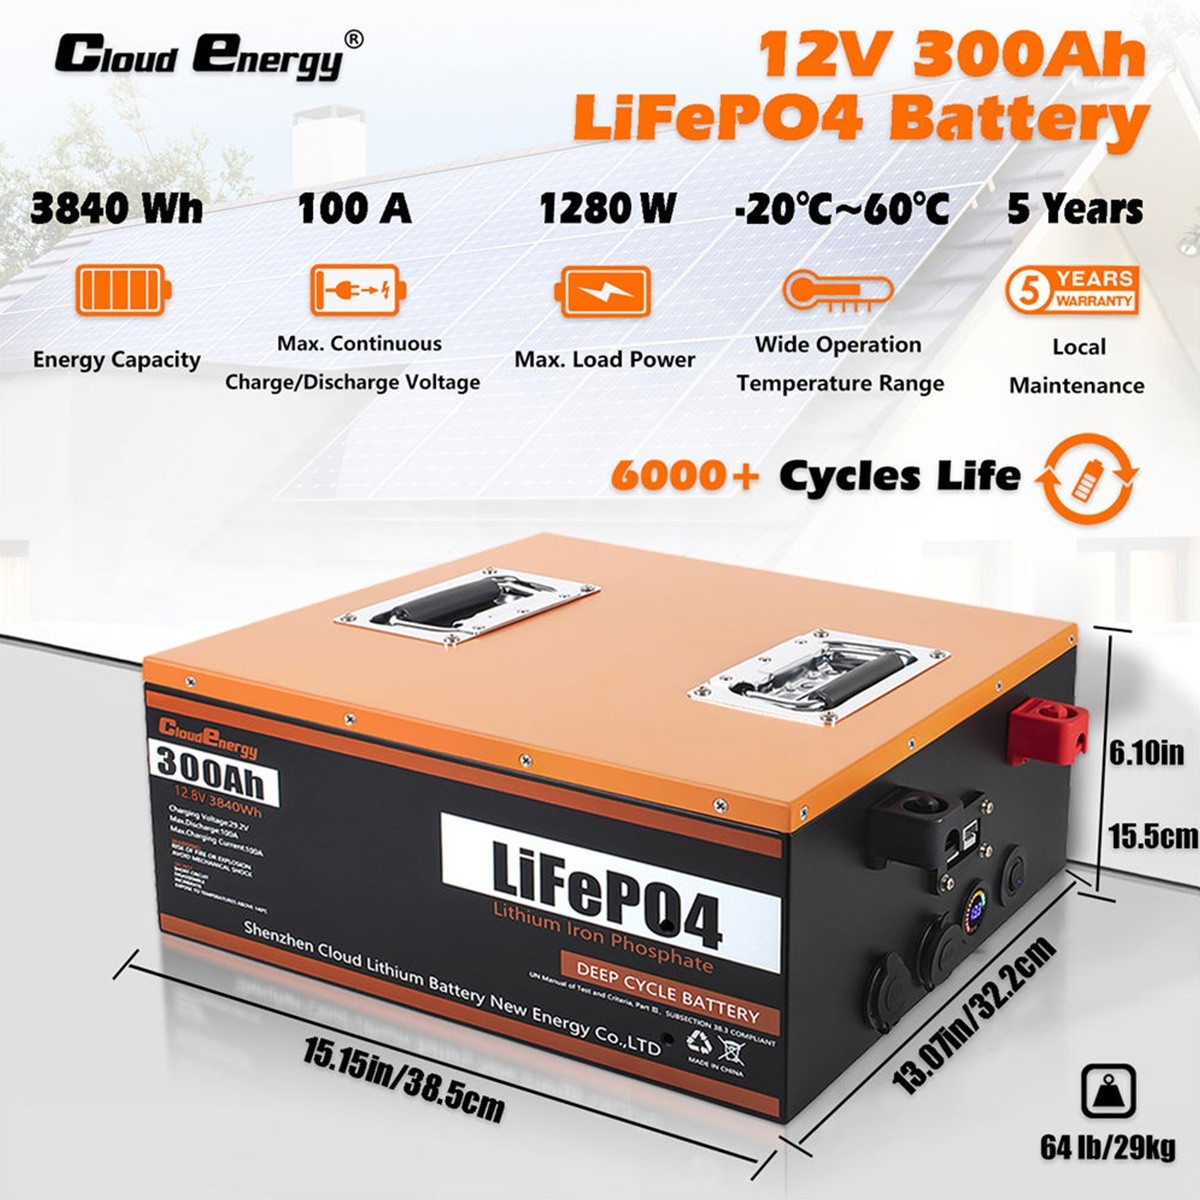 Batería LiFePO4 de 12V 300Ah de Cloudenergy